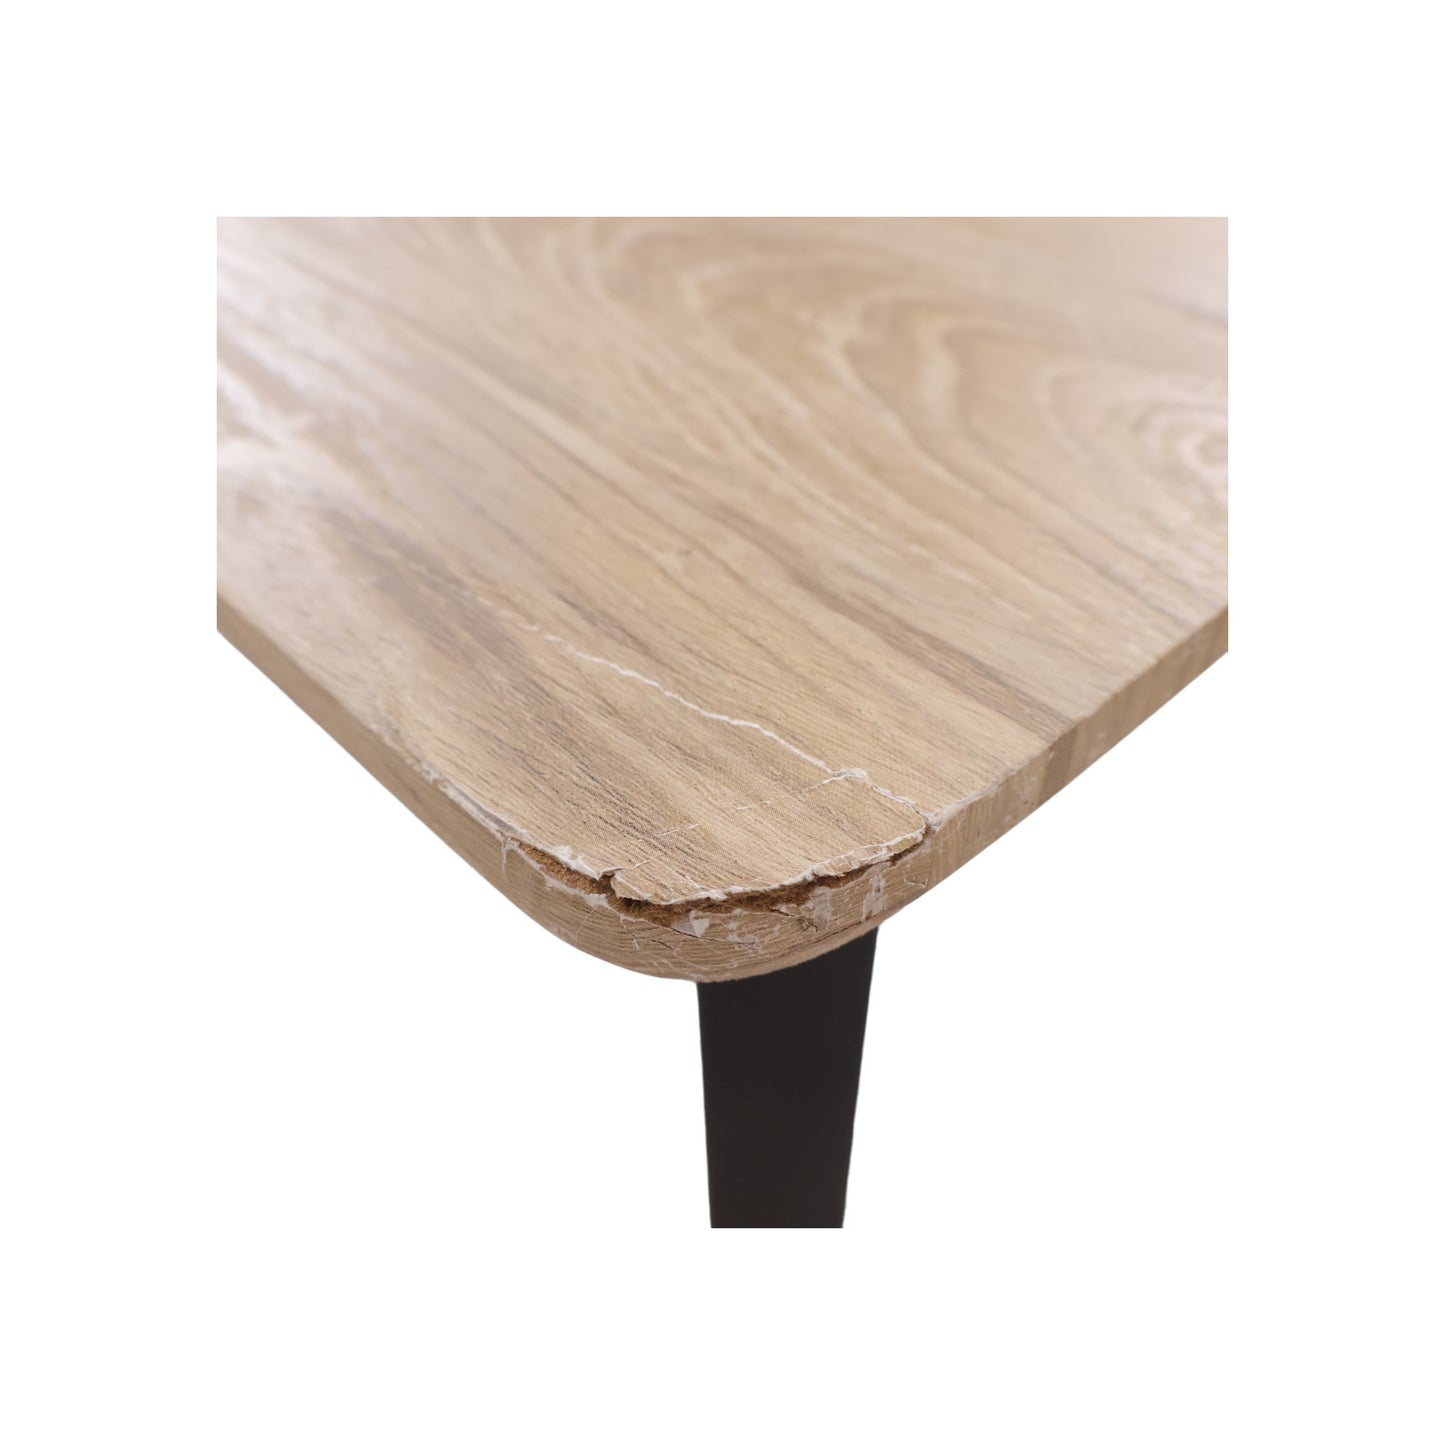 120x80 cm, Spisebord i minimalistisk design. Lys natur / sort